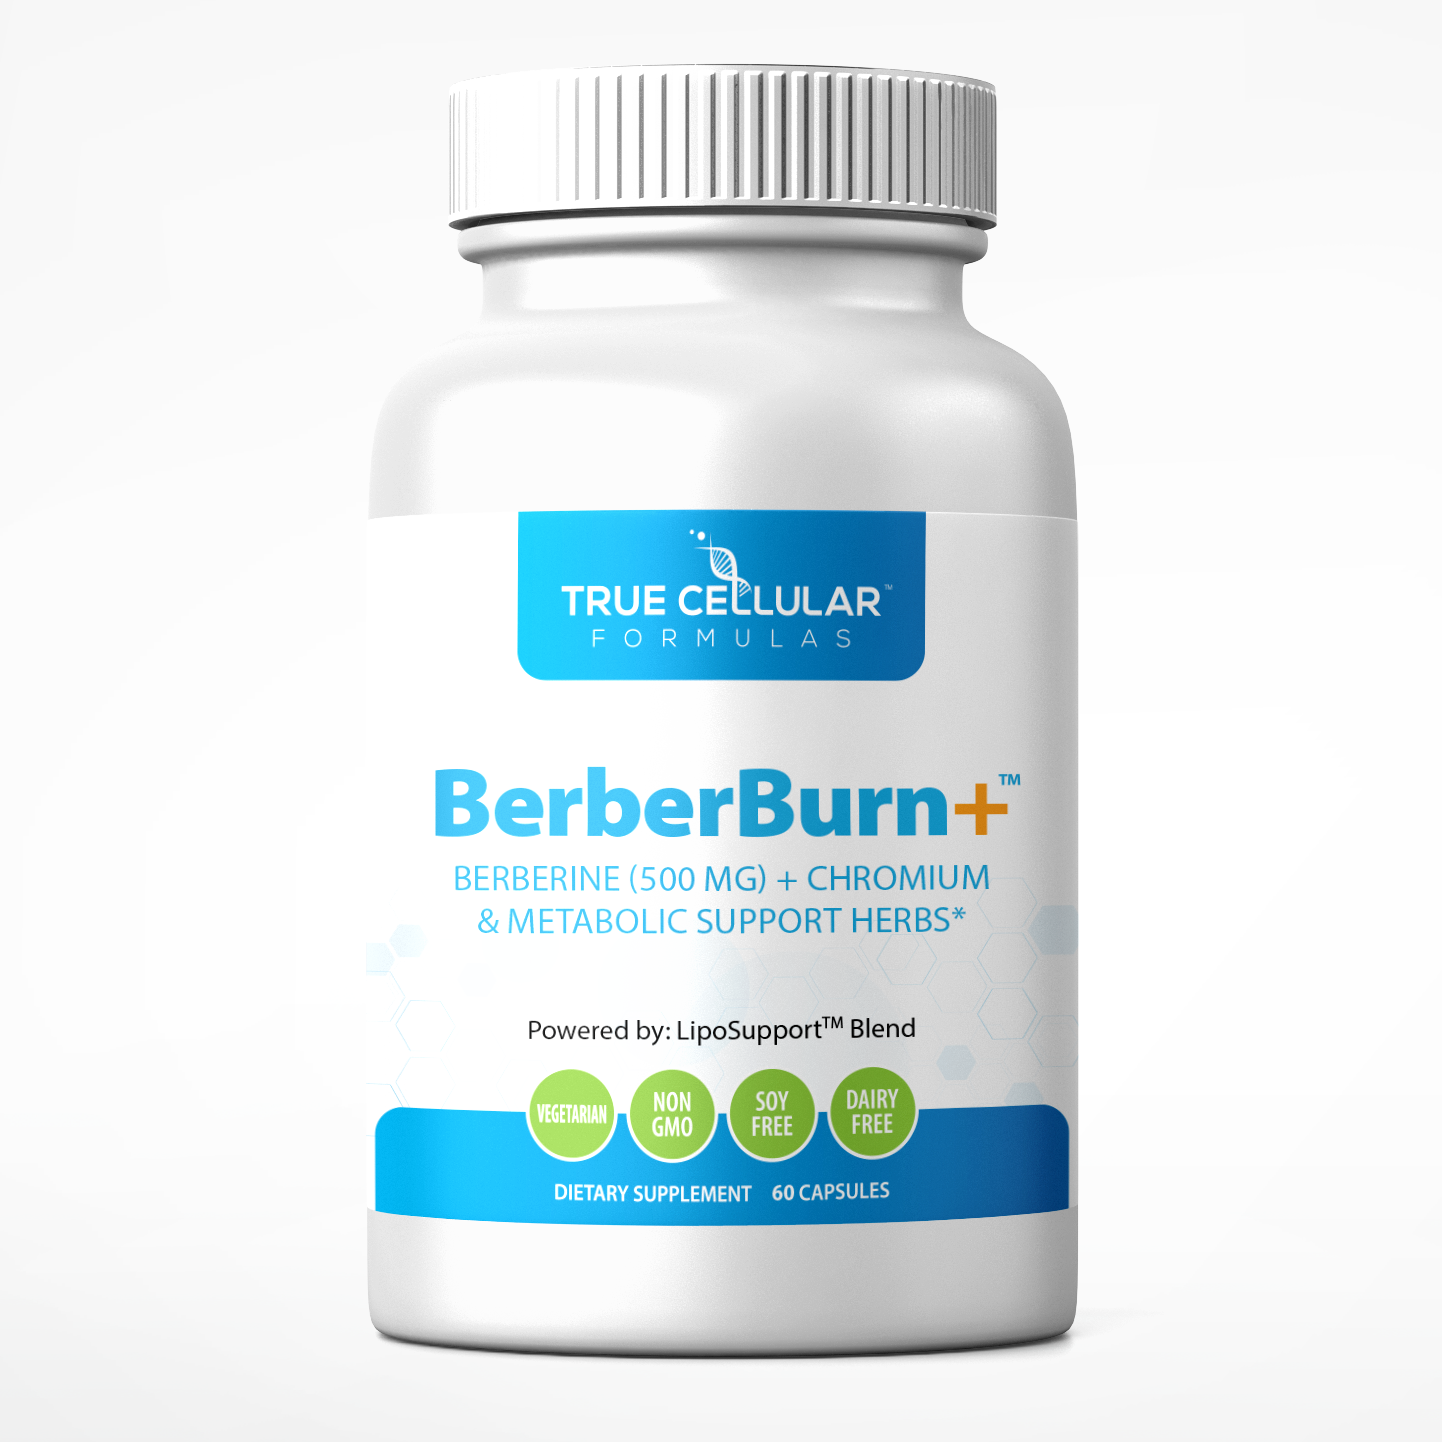 BerberBurn+